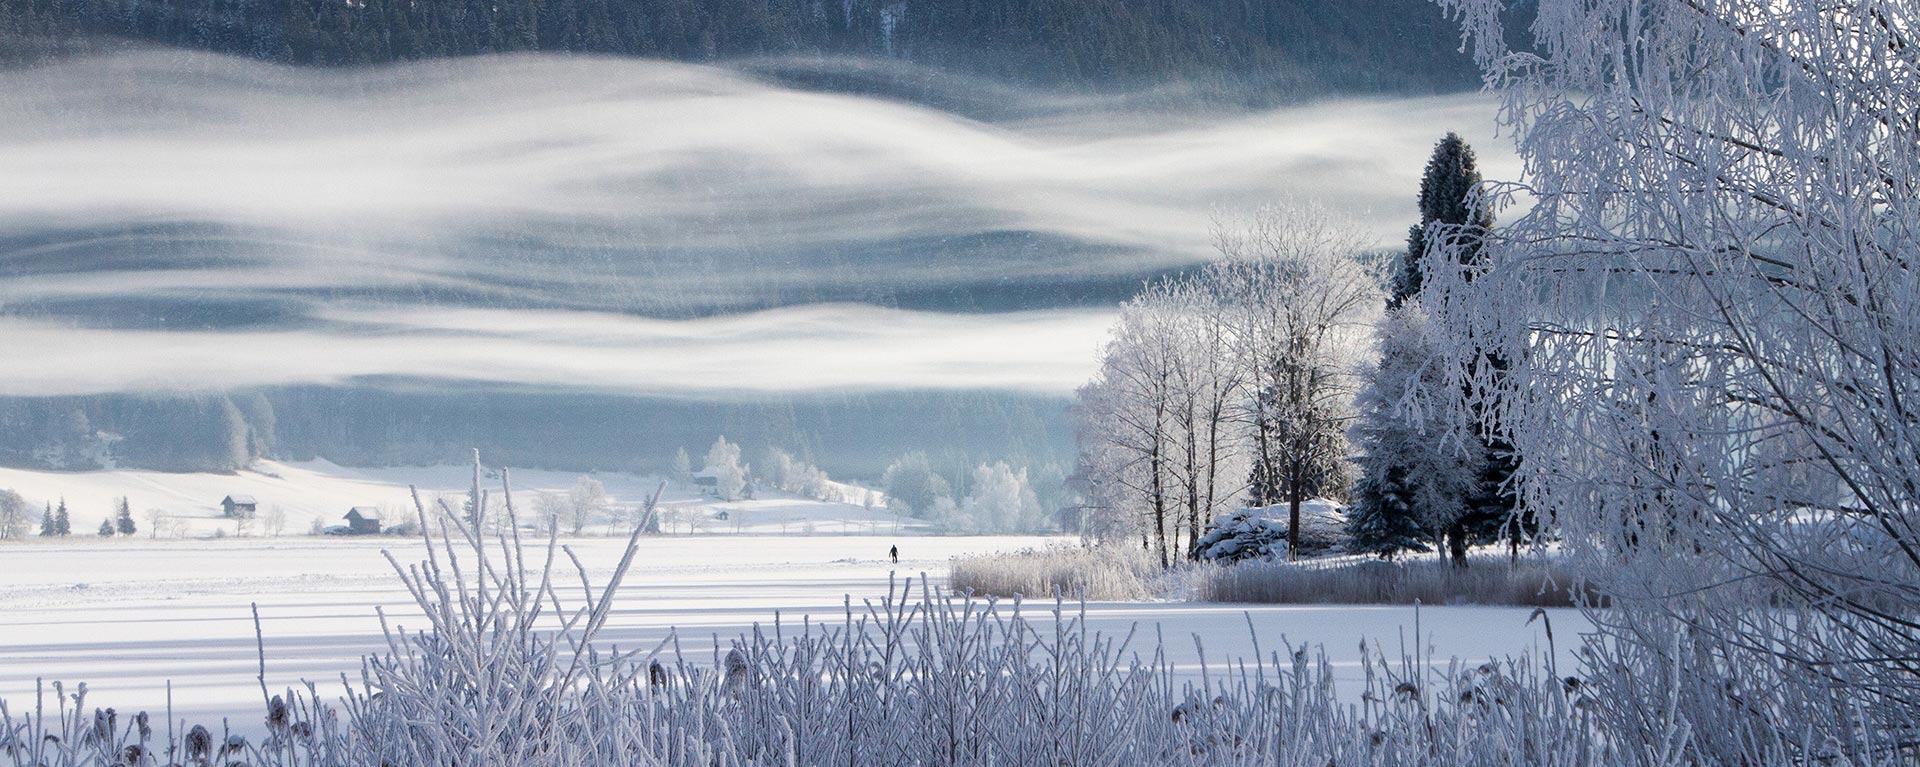 Bild Weissensee im Winter